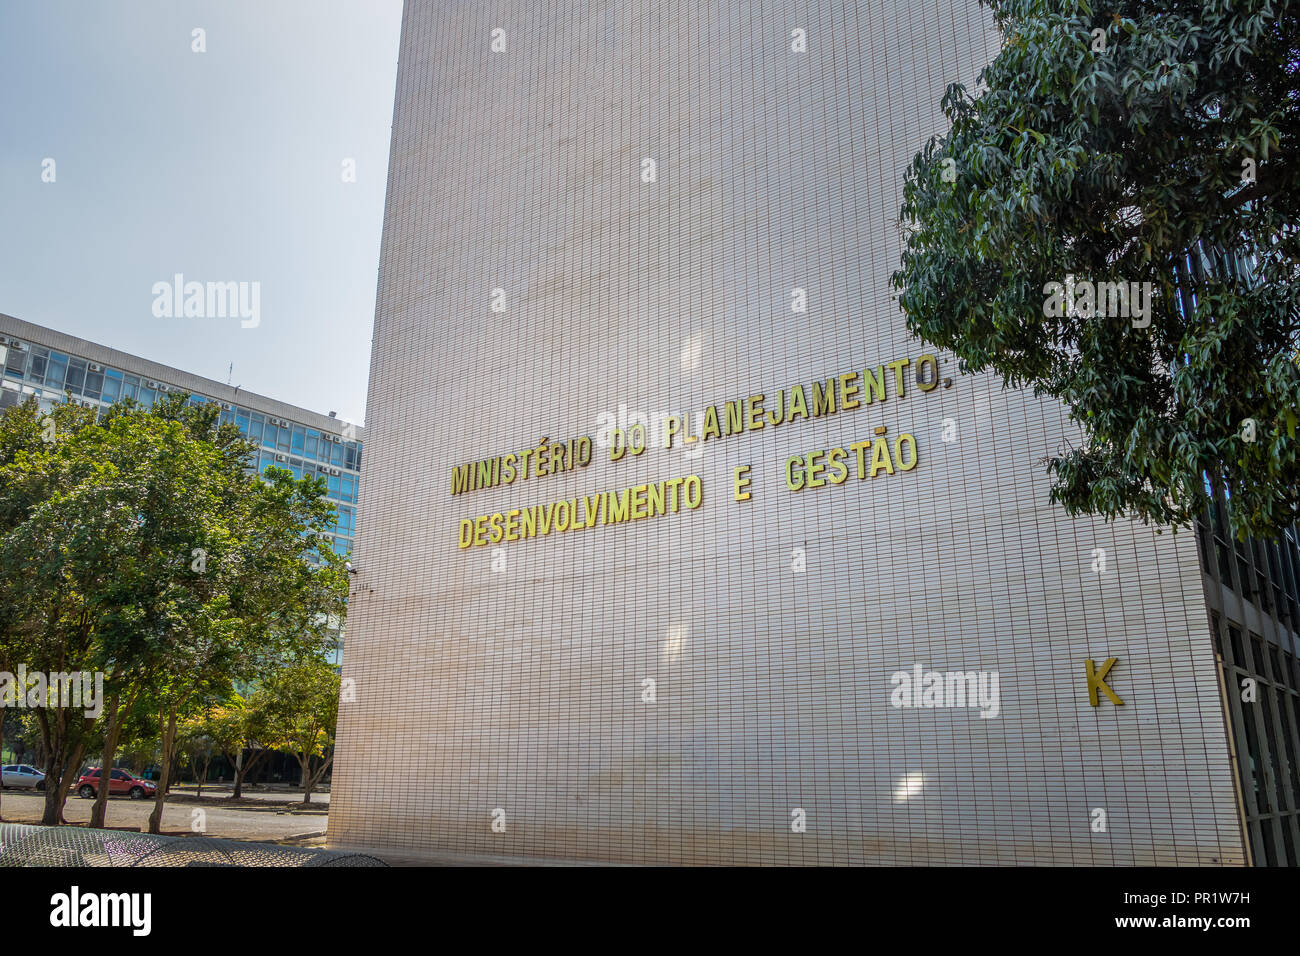 Ministero della pianificazione, sviluppo e costruzione di gestione - Brasilia, Distrito Federal, Brasile Foto Stock